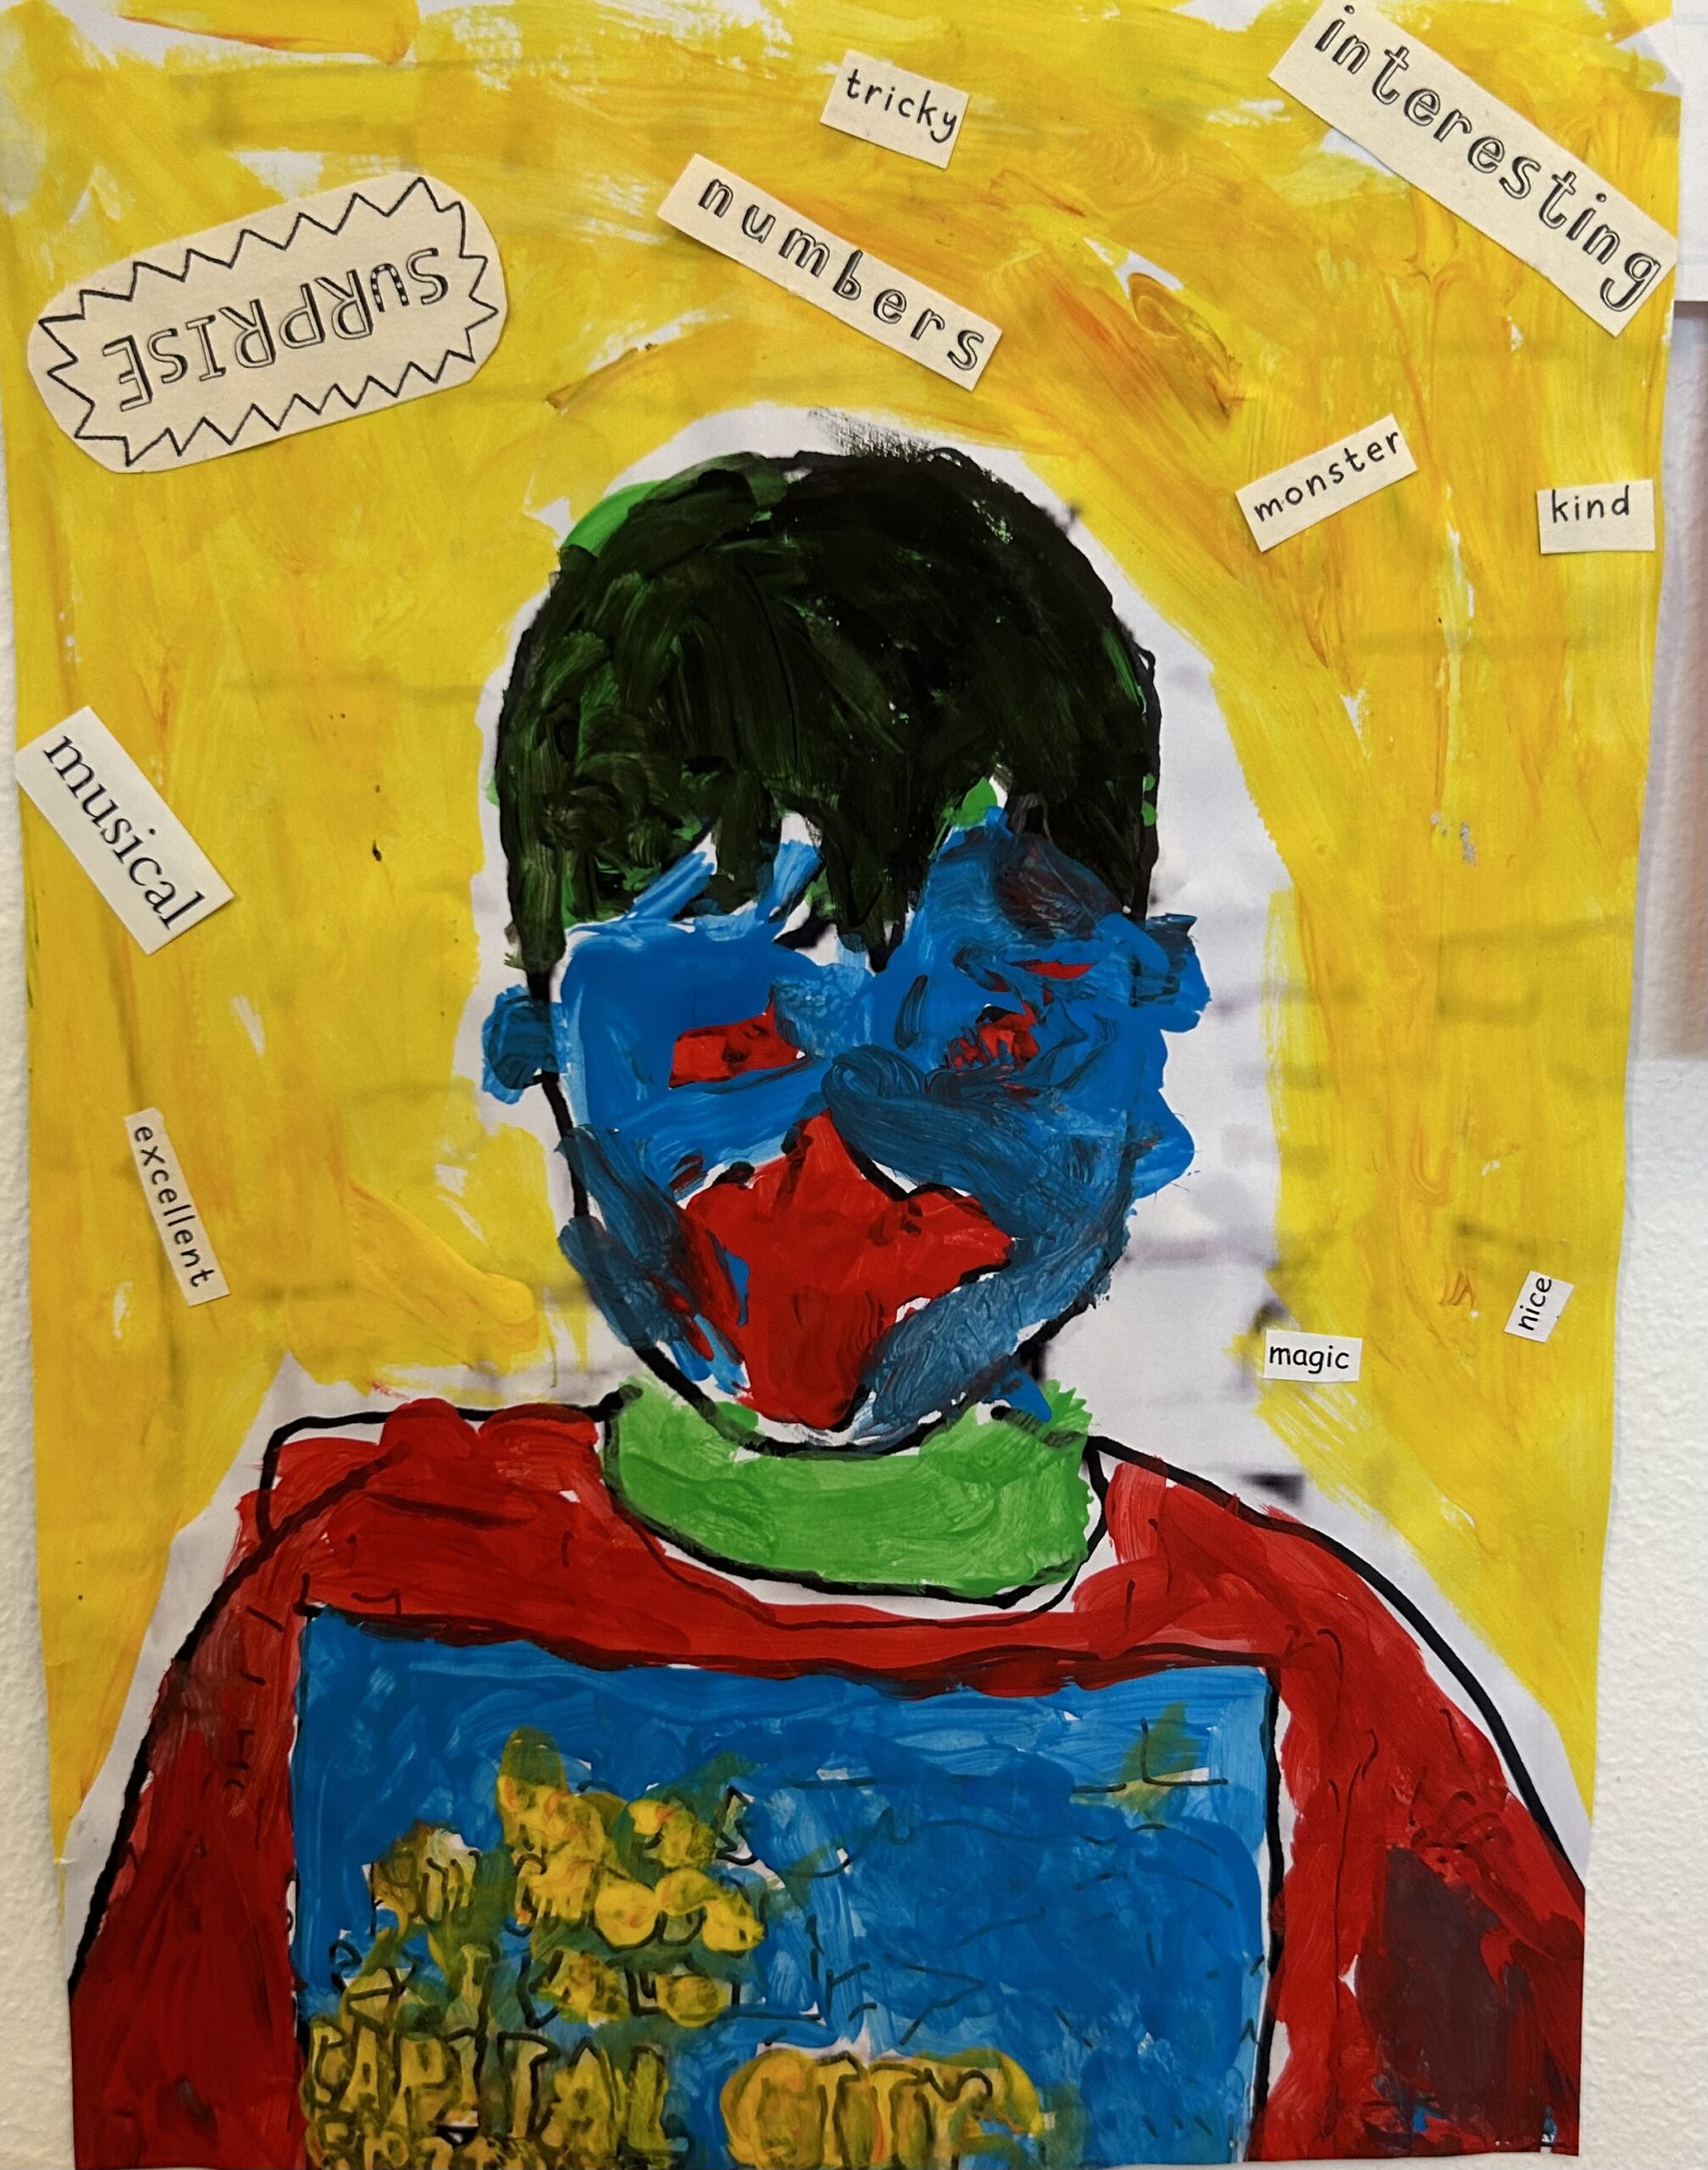 a multicolored self-portrait in bright pastel colors of a child